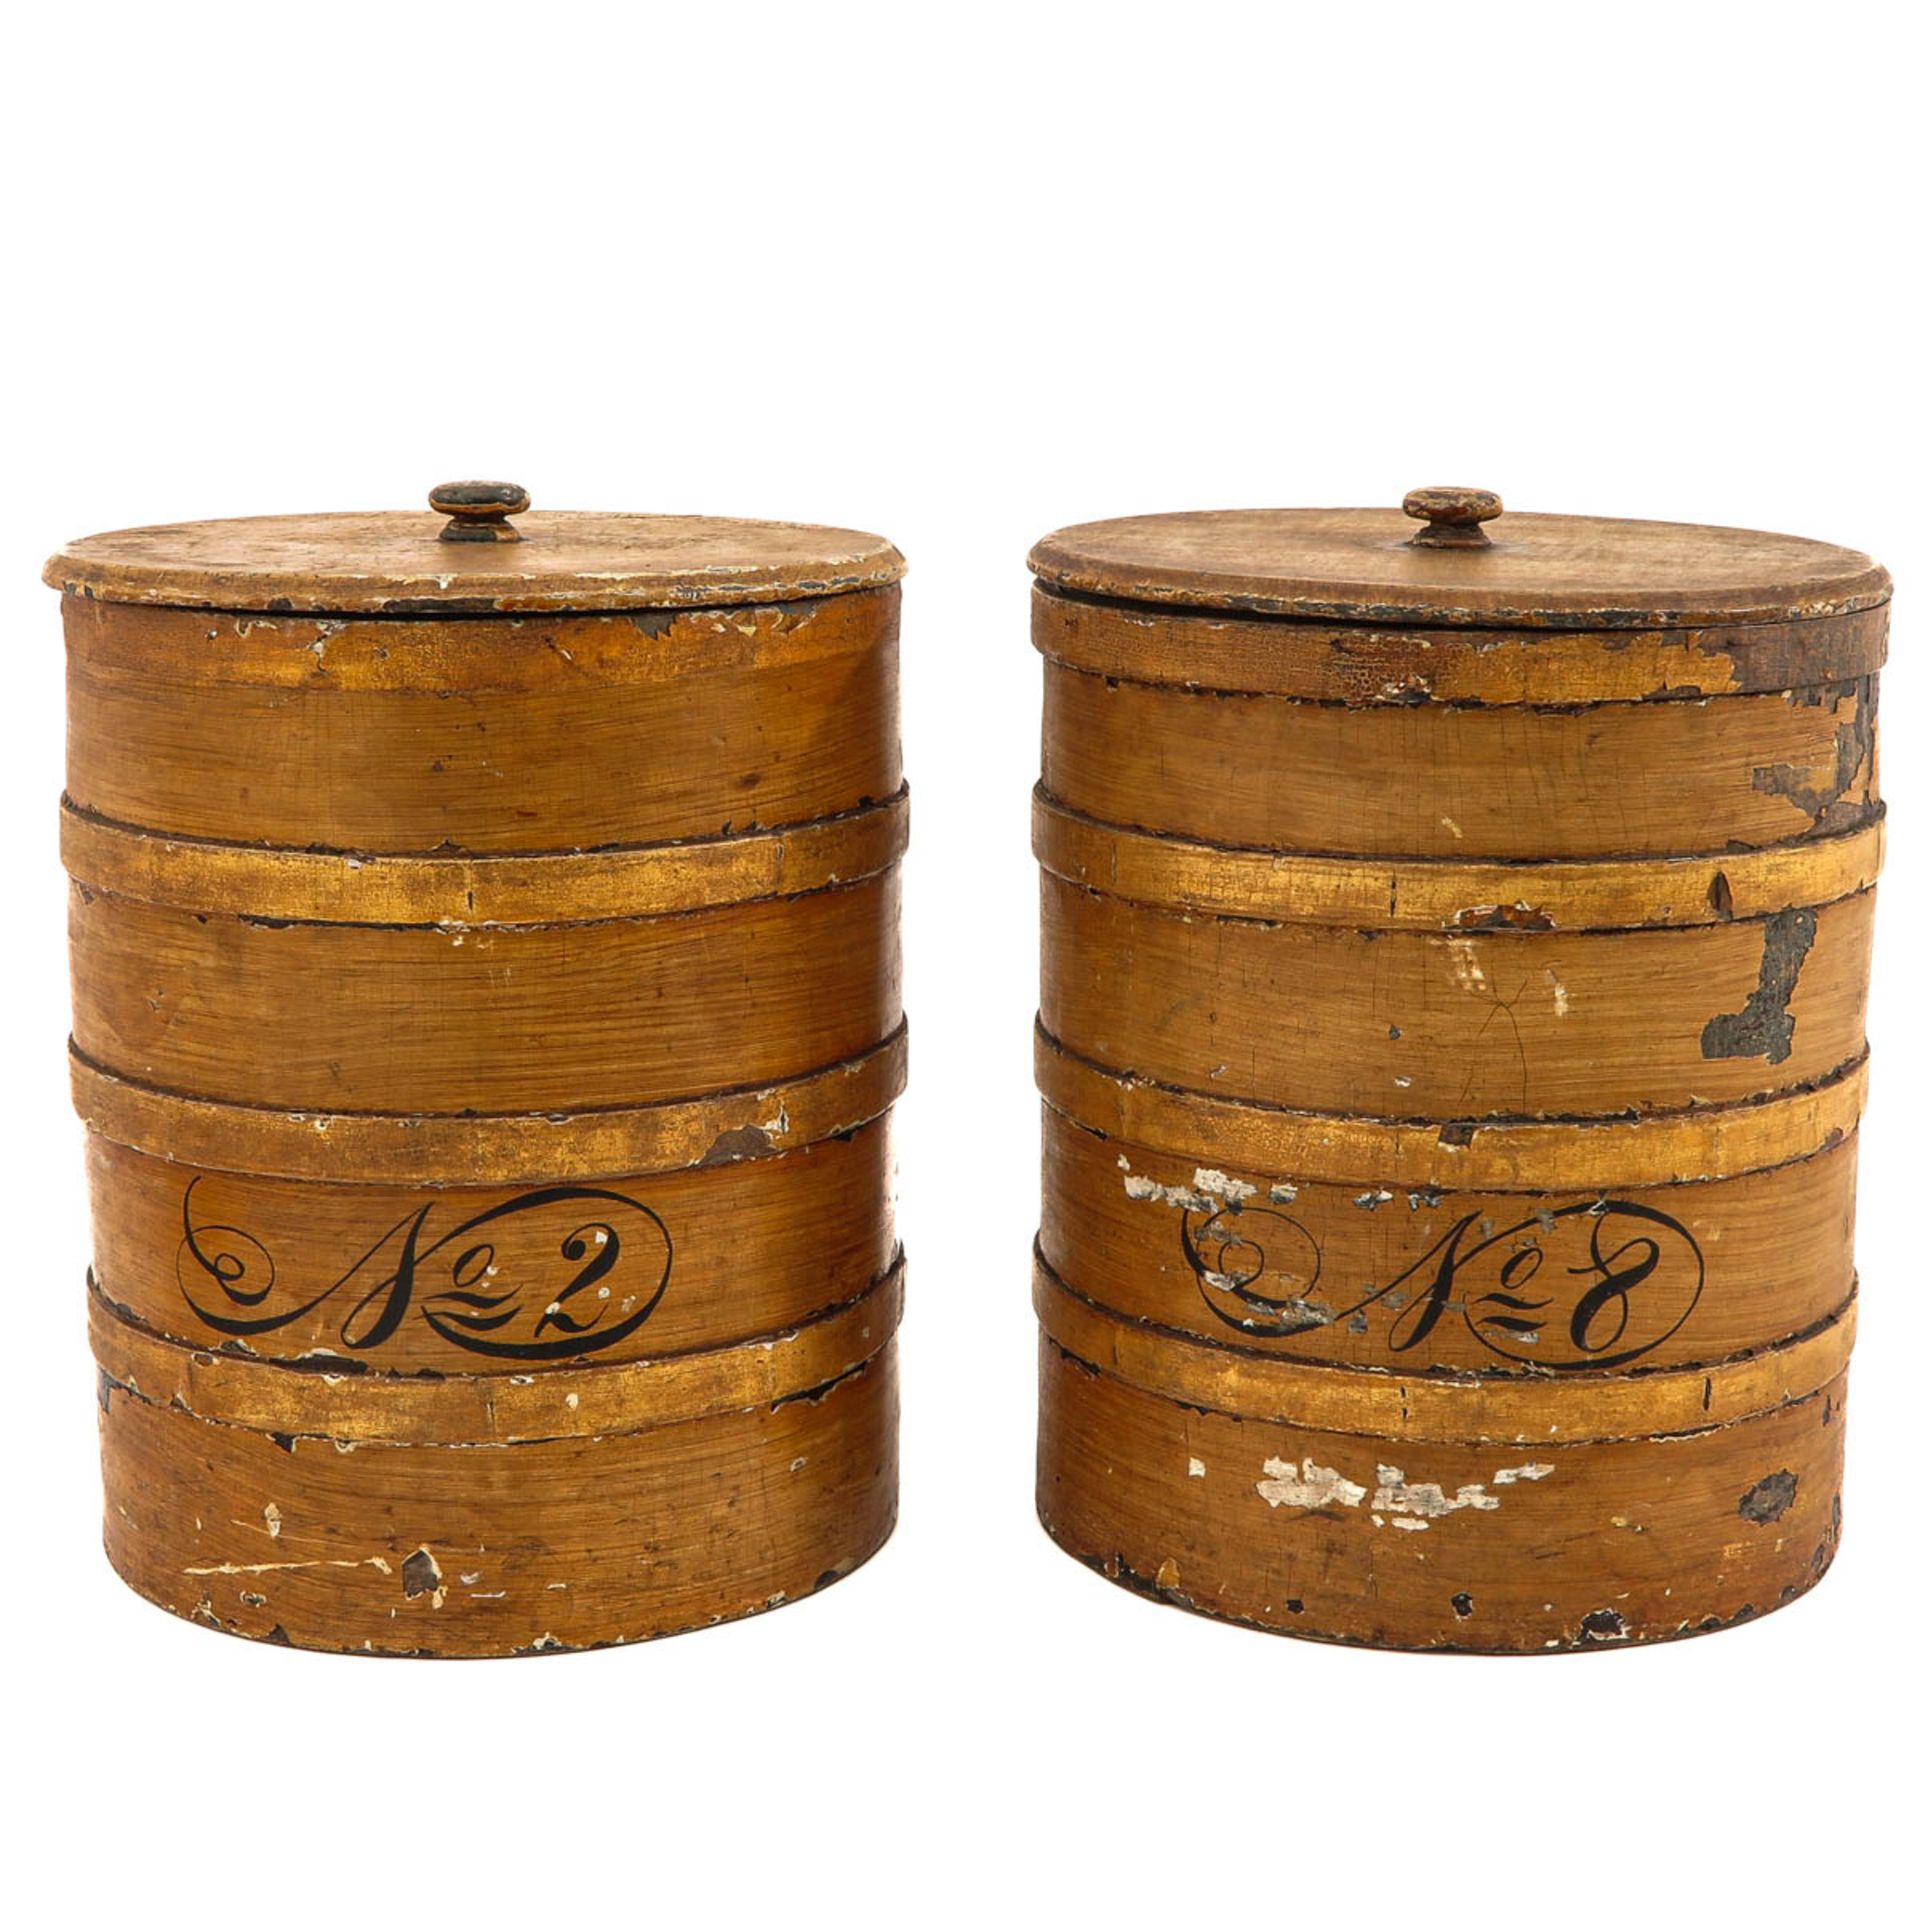 A Pair of Wooden Barrels